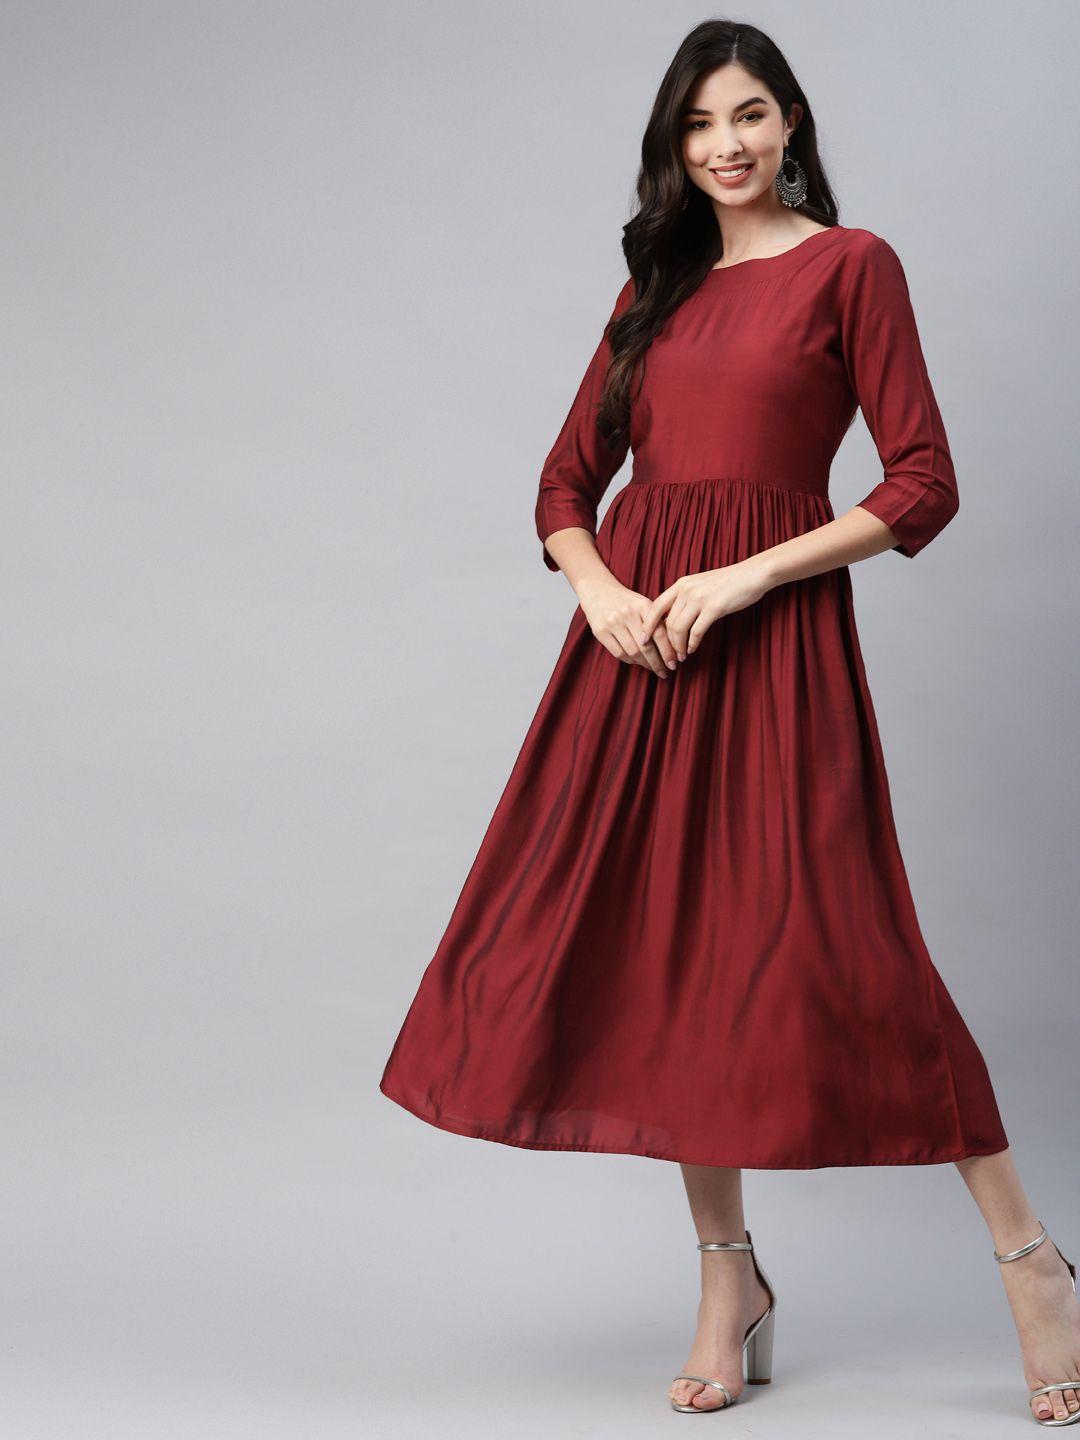 aarika red a-line midi dress